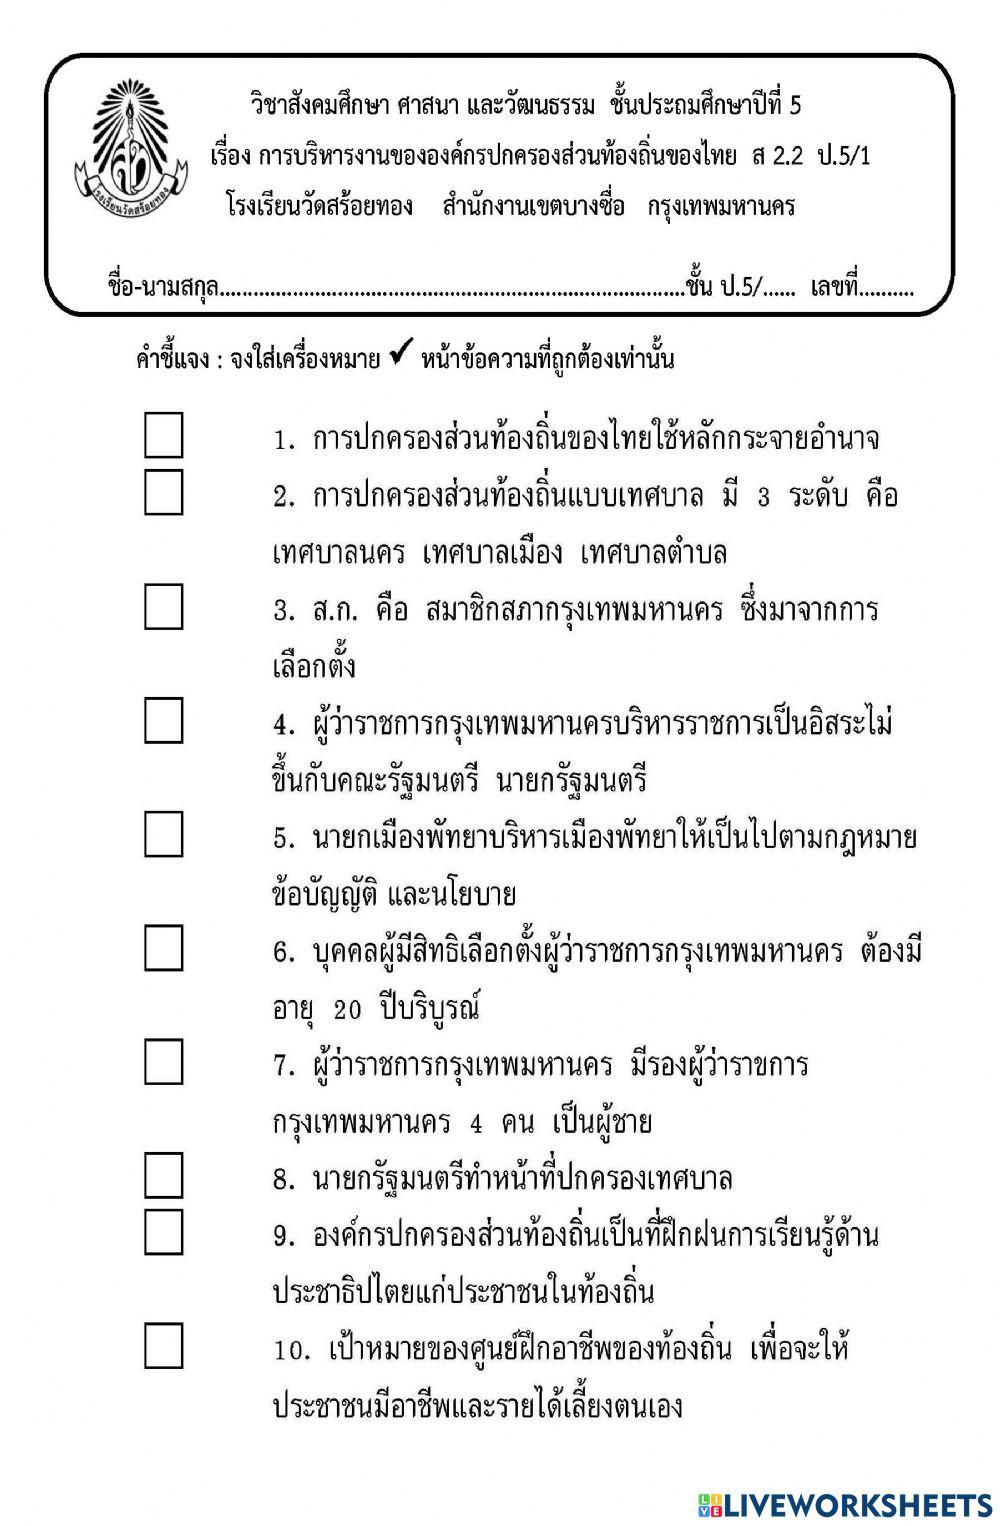 การบริหารขององค์กรปกครองส่วนท้องถิ่นของไทย